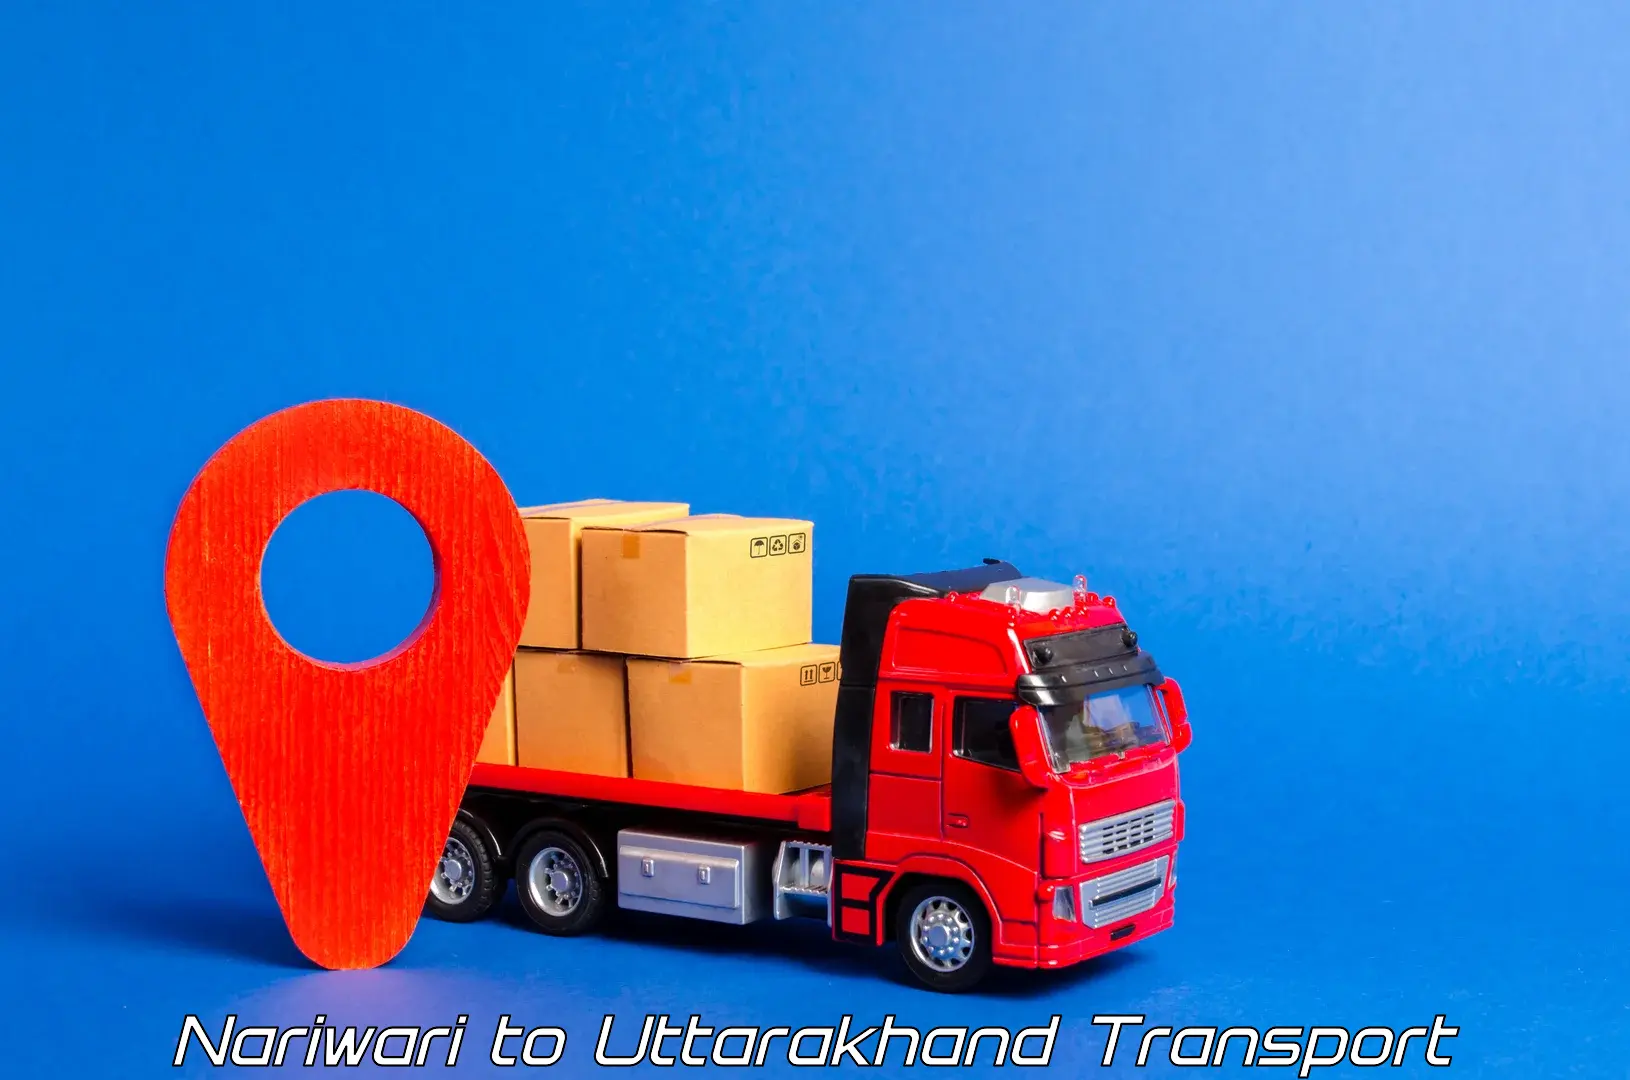 Road transport services Nariwari to Uttarakhand